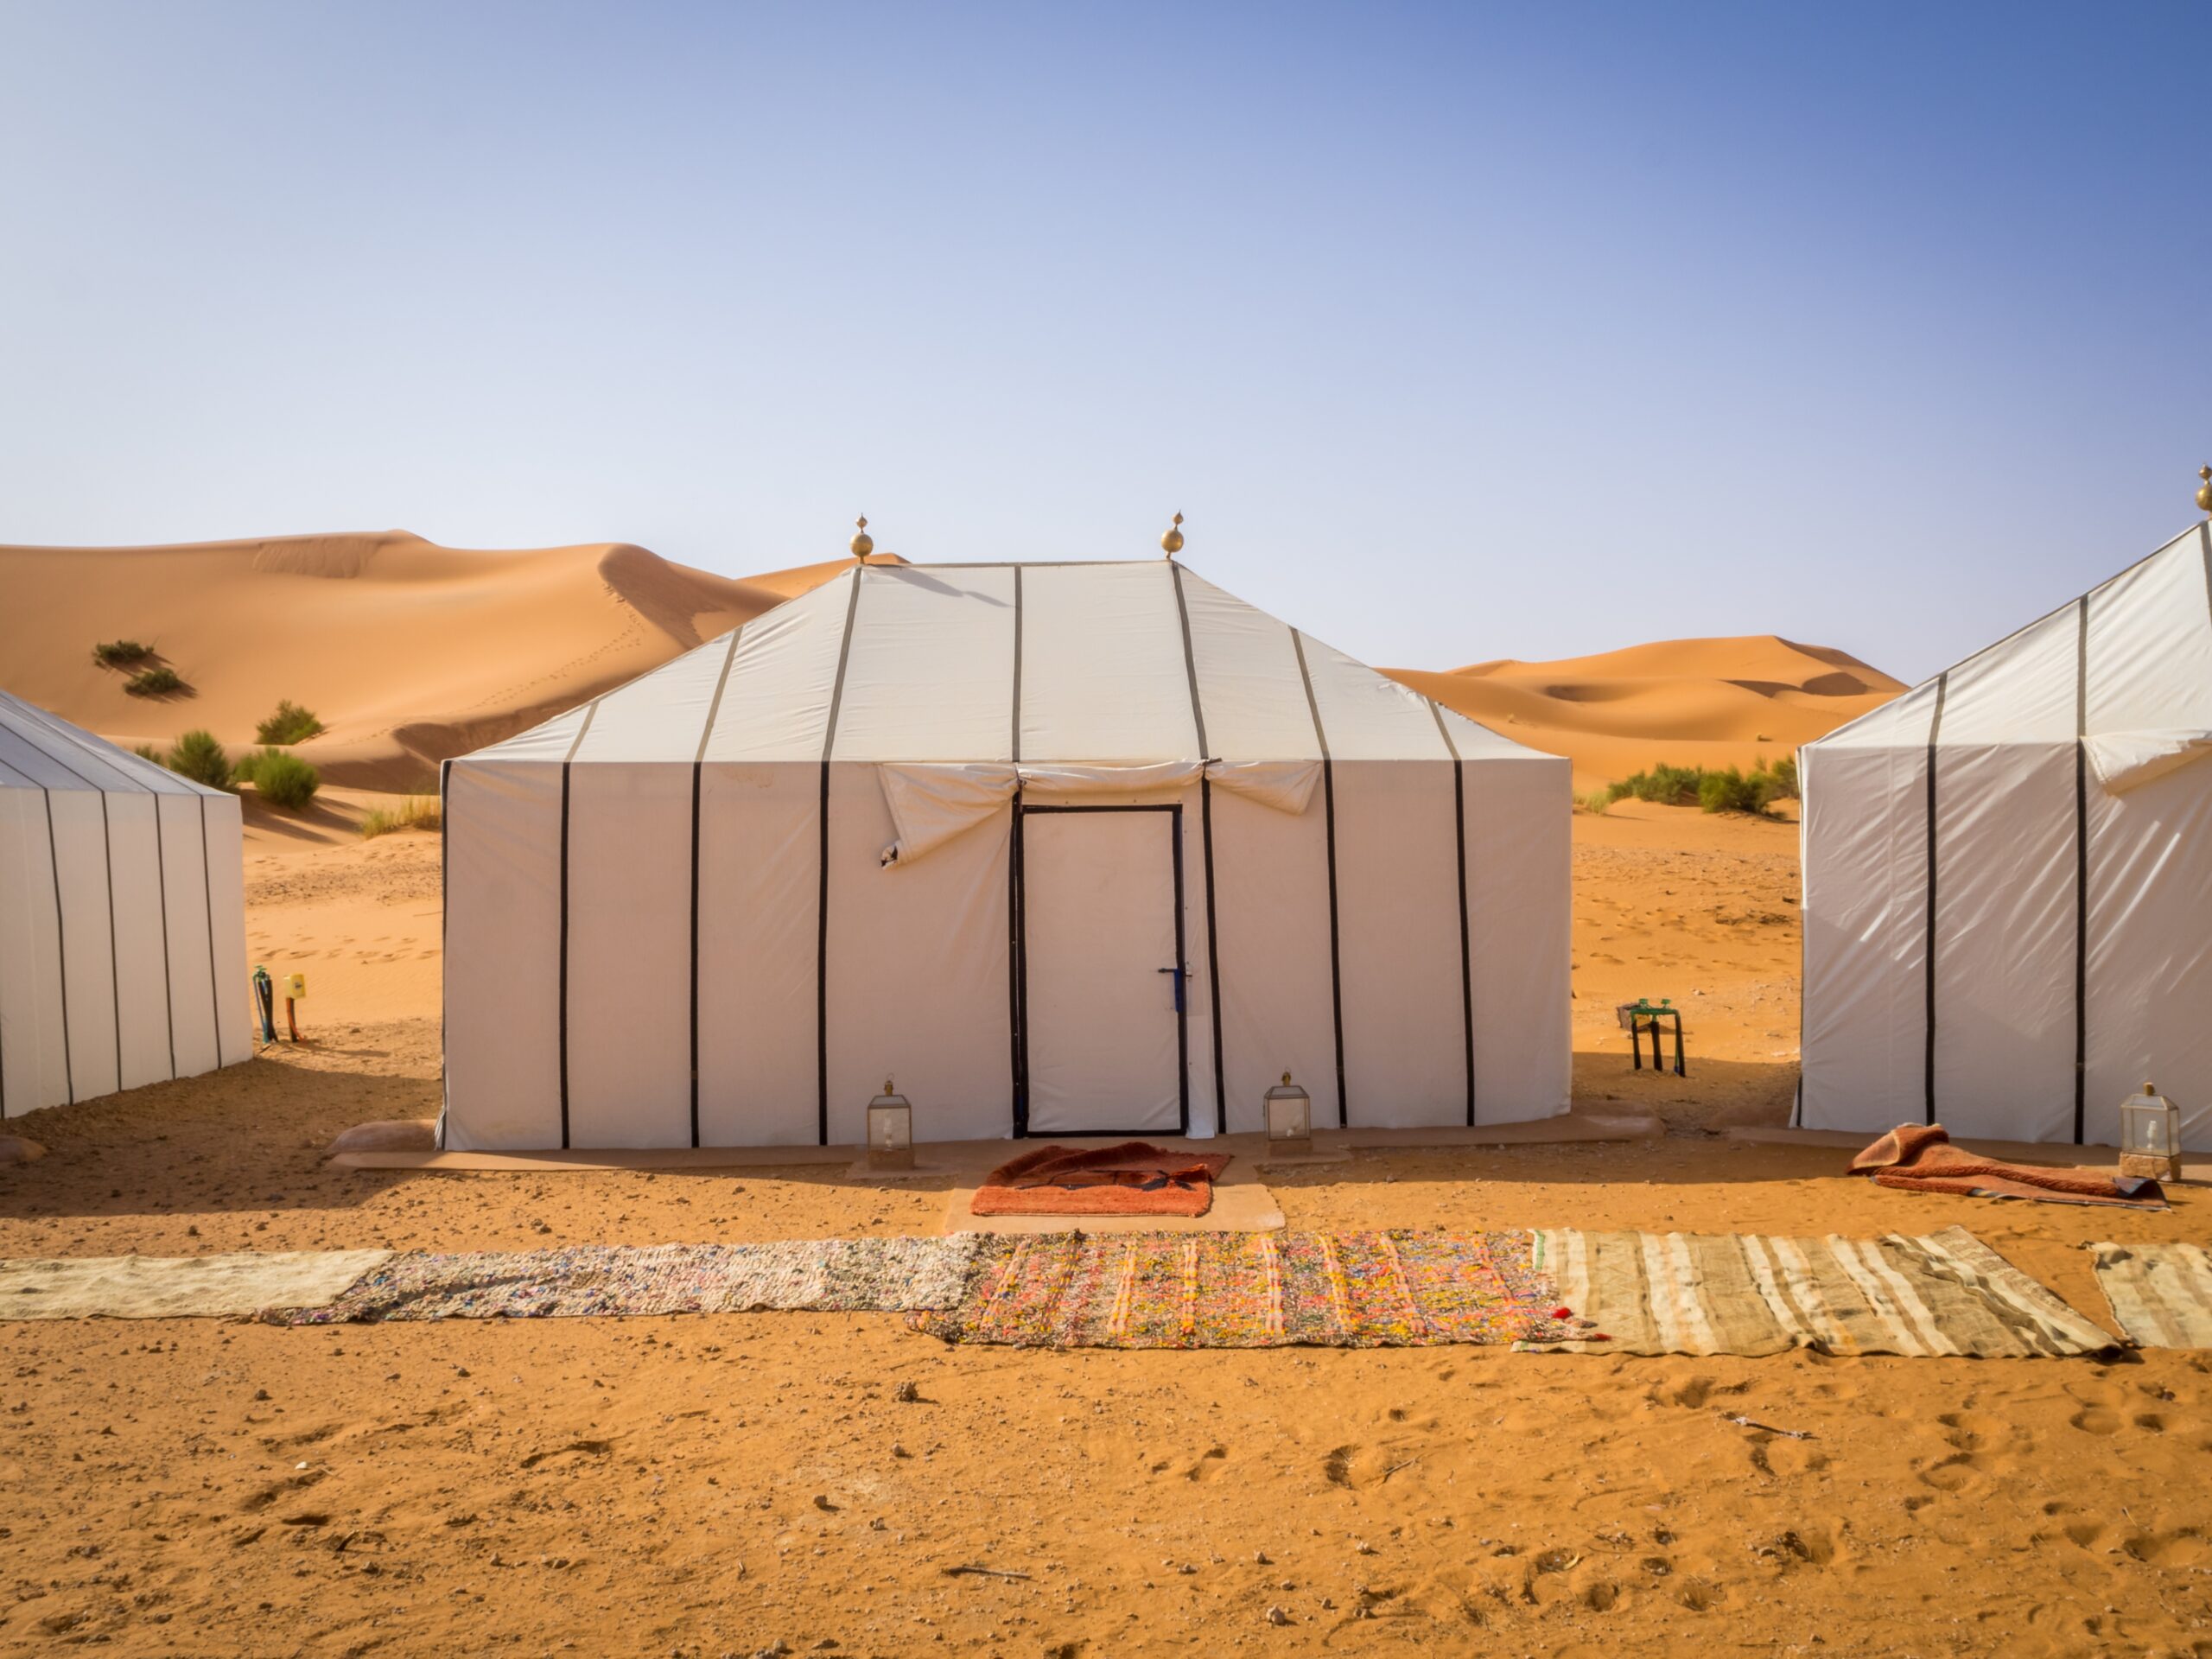 Wadi Rum – Bedouin Camps